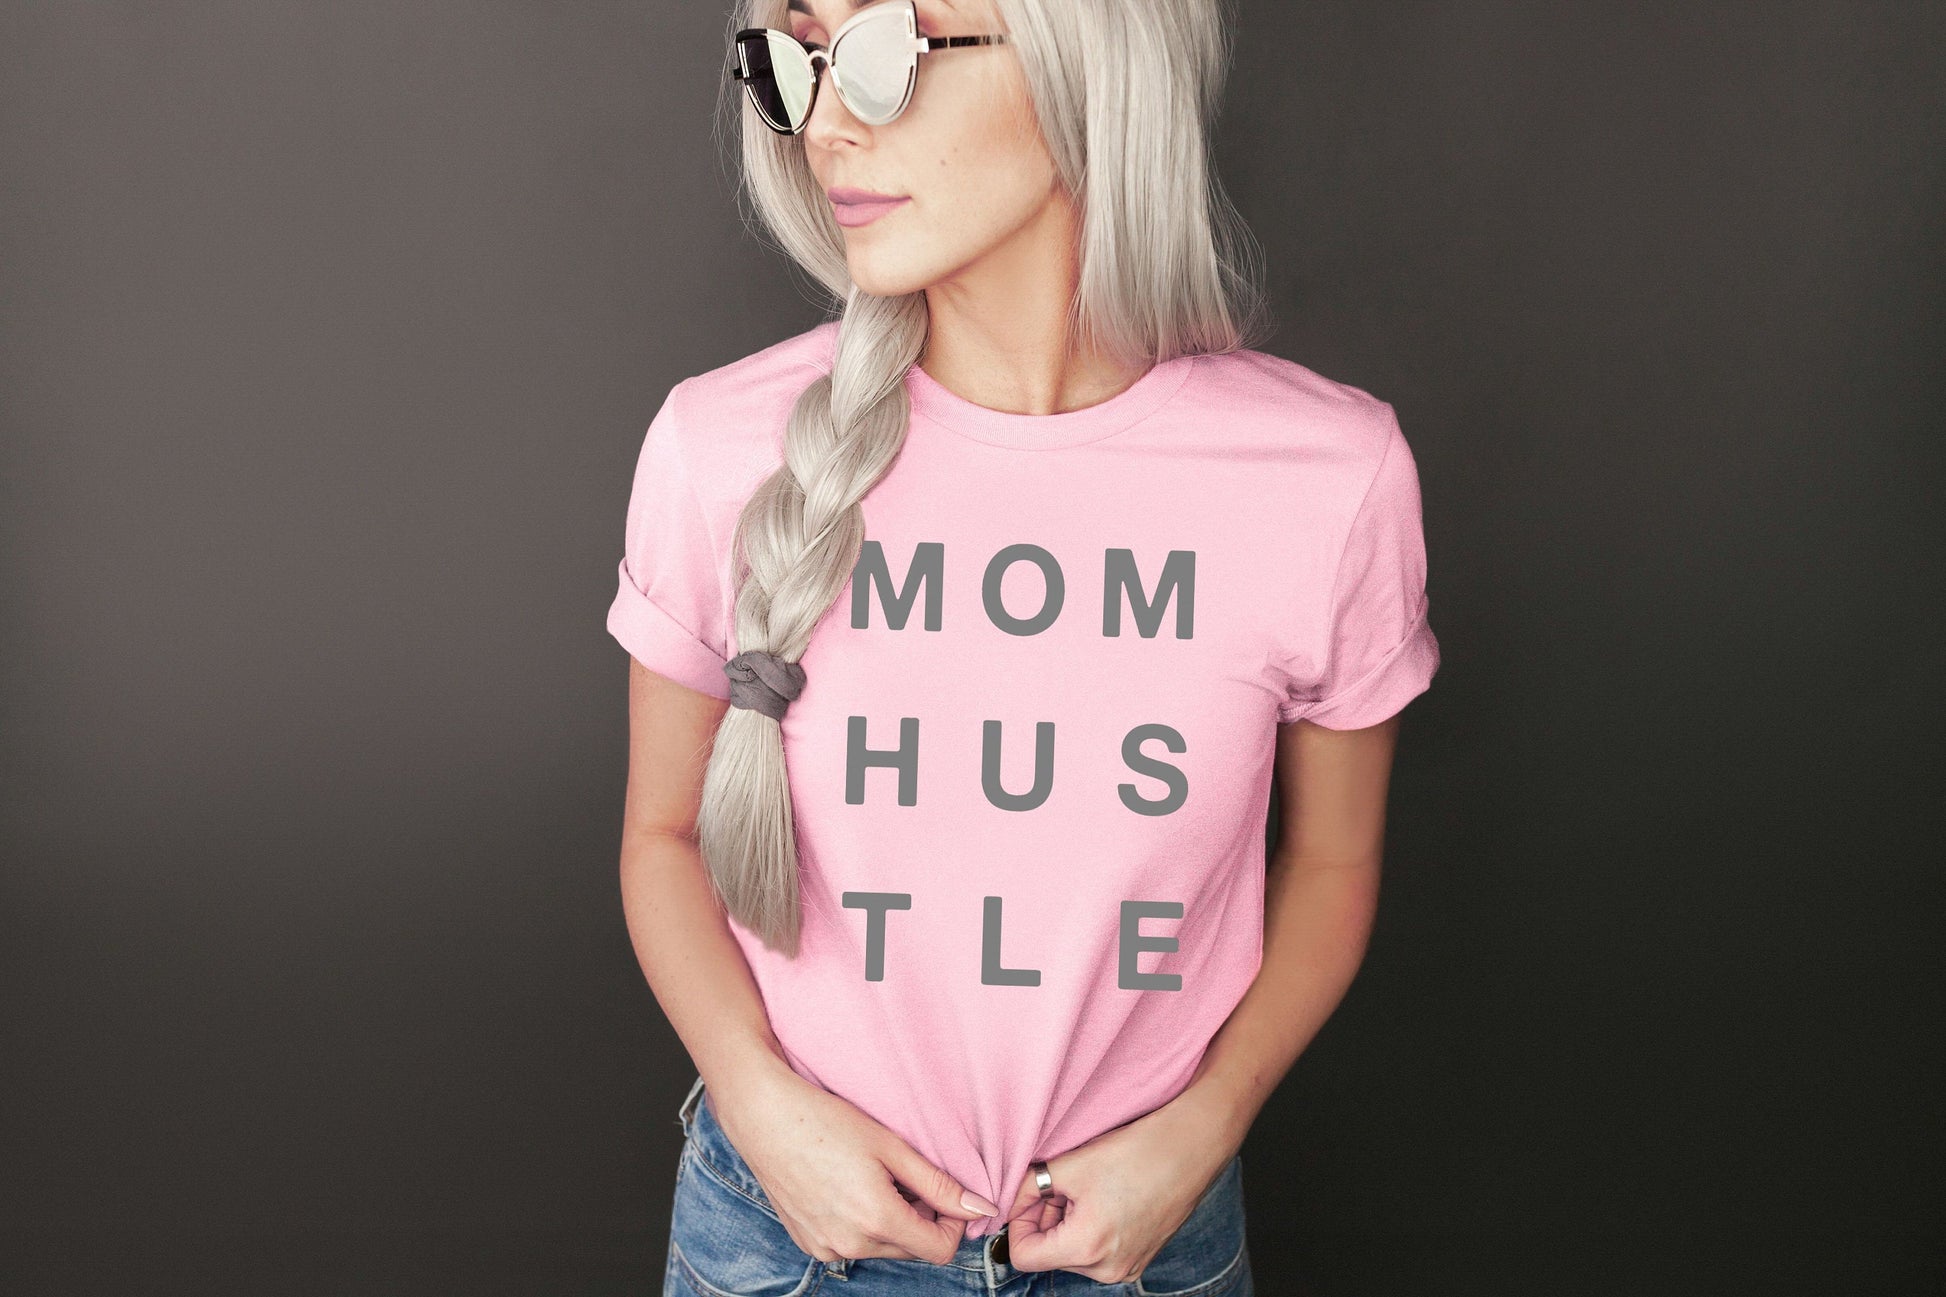 mom hustle women's tshirt • super soft tees for women • shirt for mom • mom boss • boss babe • entrepreneur gift